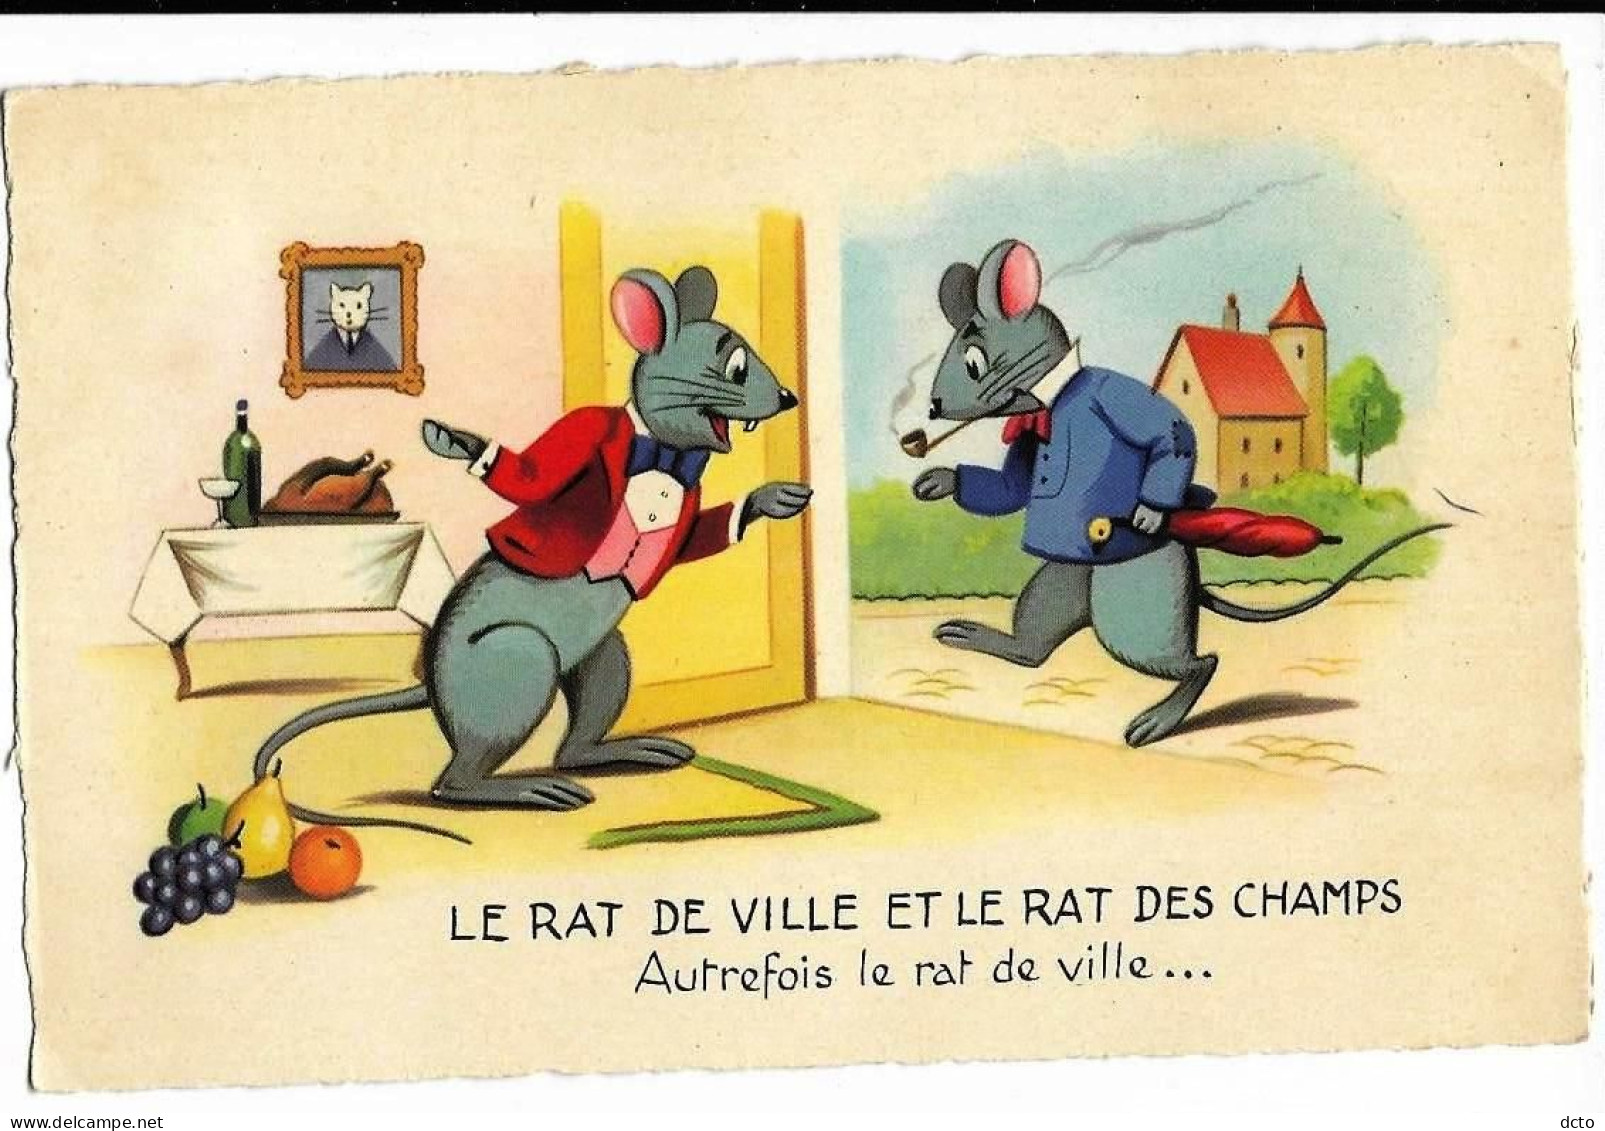 Fable La Fontaine Le Rat De Ville Et Le Rat Des Champs Autrefois Le Rat De Ville... Illustration Ed. JG, Cpsm Pf - Fairy Tales, Popular Stories & Legends